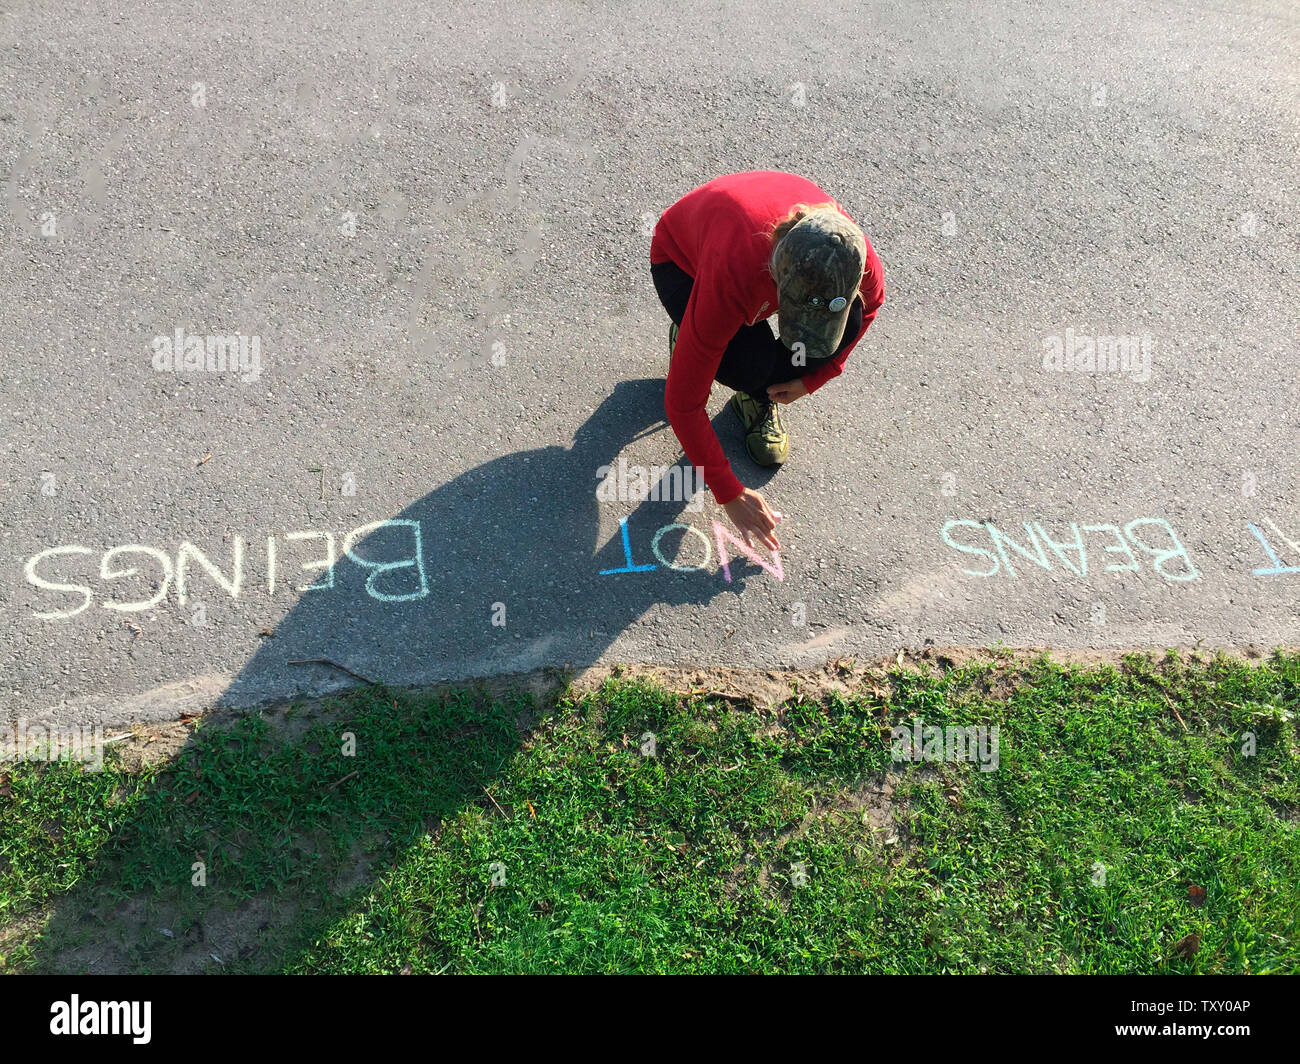 Un défenseur des droits des animaux écrit un message en craie sur une surface pavée dans un parc, Ontario, Canada Banque D'Images